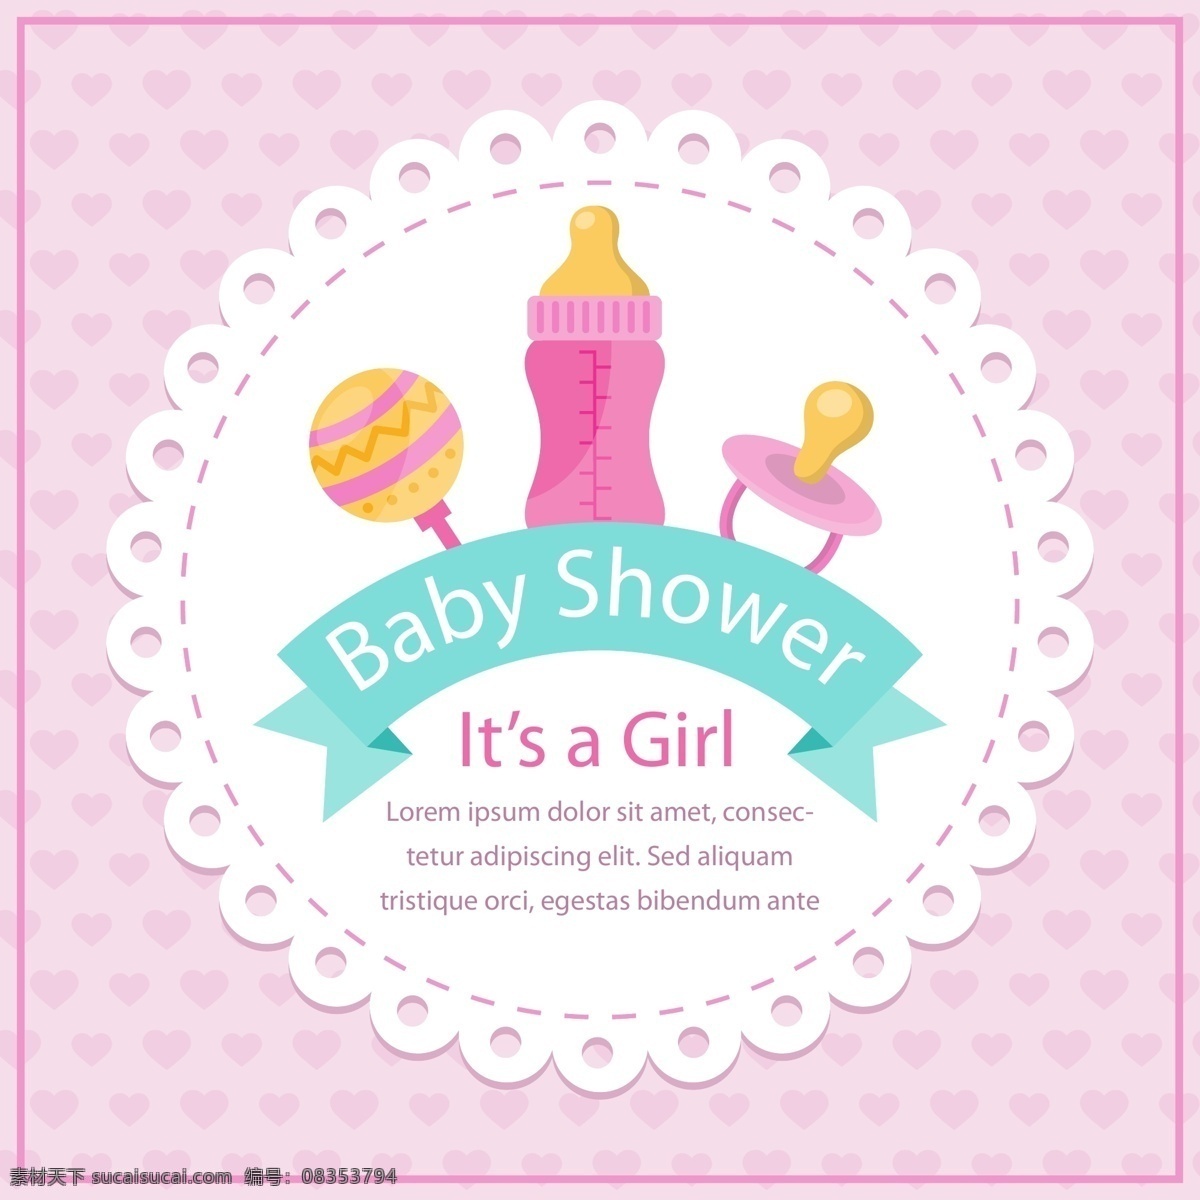 婴儿元素 复古 宝贝 标签 党 邀请 爱 卡 鸟 婴儿 淋浴器 模板 粉红色 可爱的 儿童 庆典 新 卡片 贴纸 元素婴儿洗澡